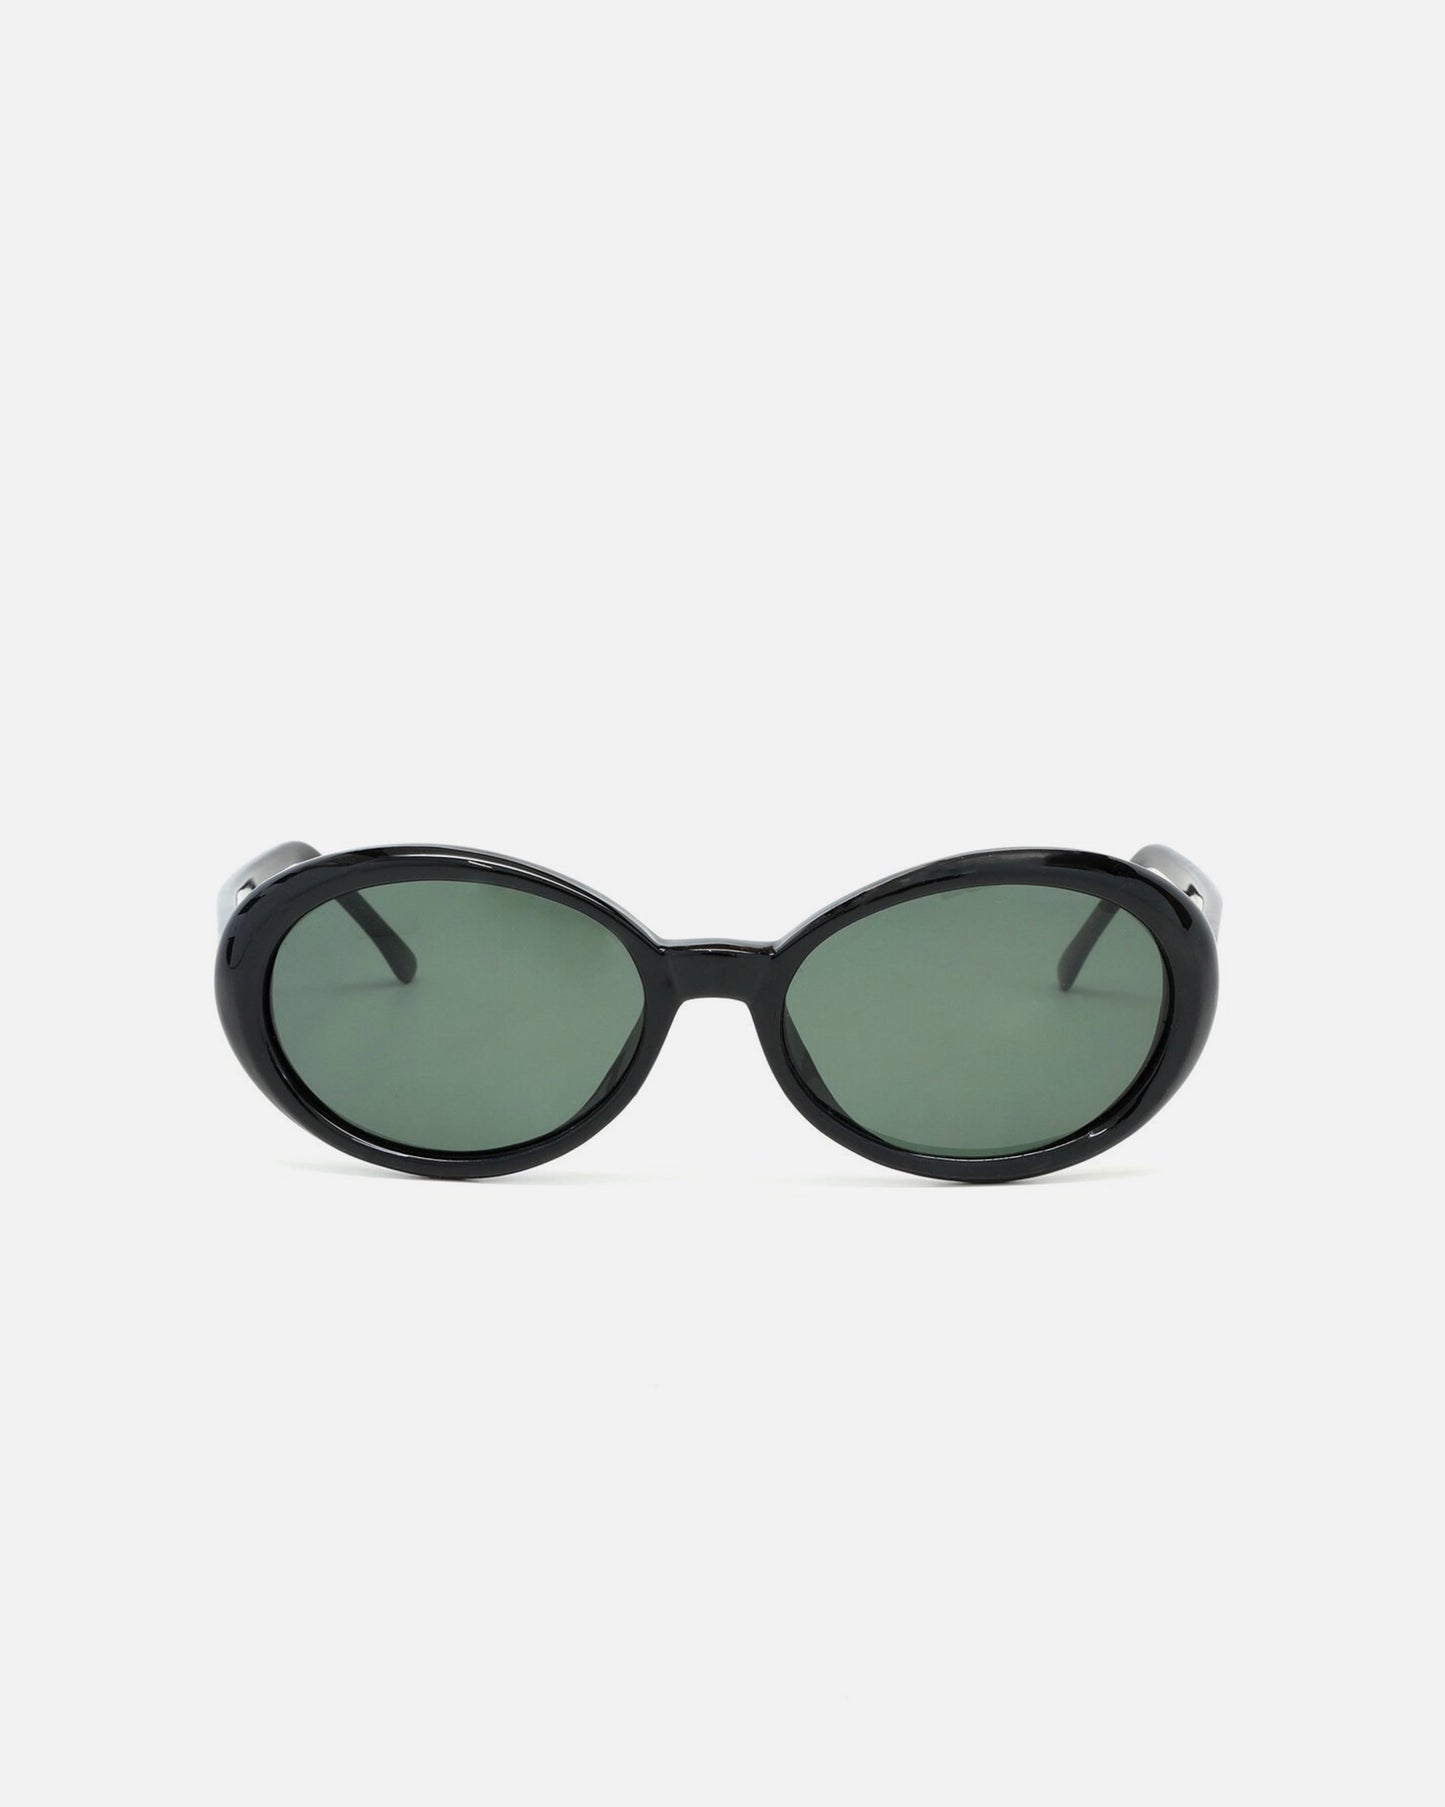 NOS  Mod Oval Black Frame Sunglasses